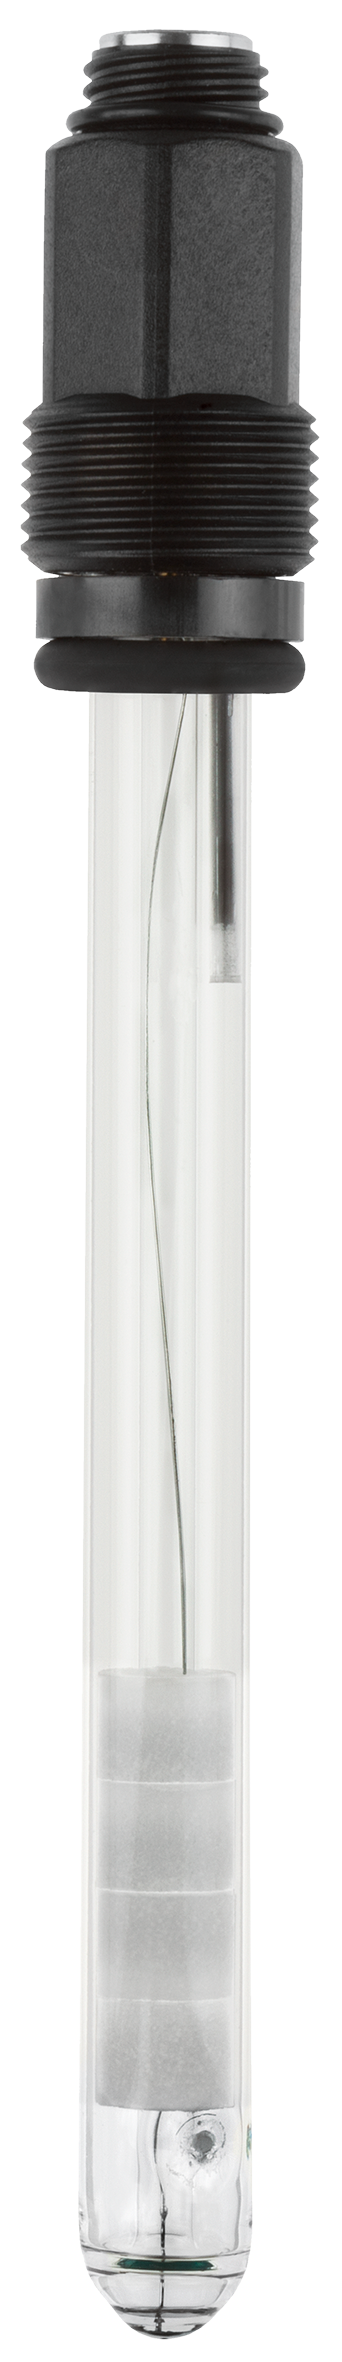 JUMO tecLine Redox-Elektrode (Kunststoff PEI mit Schutzkorb, Platin-Kuppe, 1x Glasfaser, Schraubkopf Pg13,5, 120mm, Salzreserve, Doppelkammer KCI/KCI)